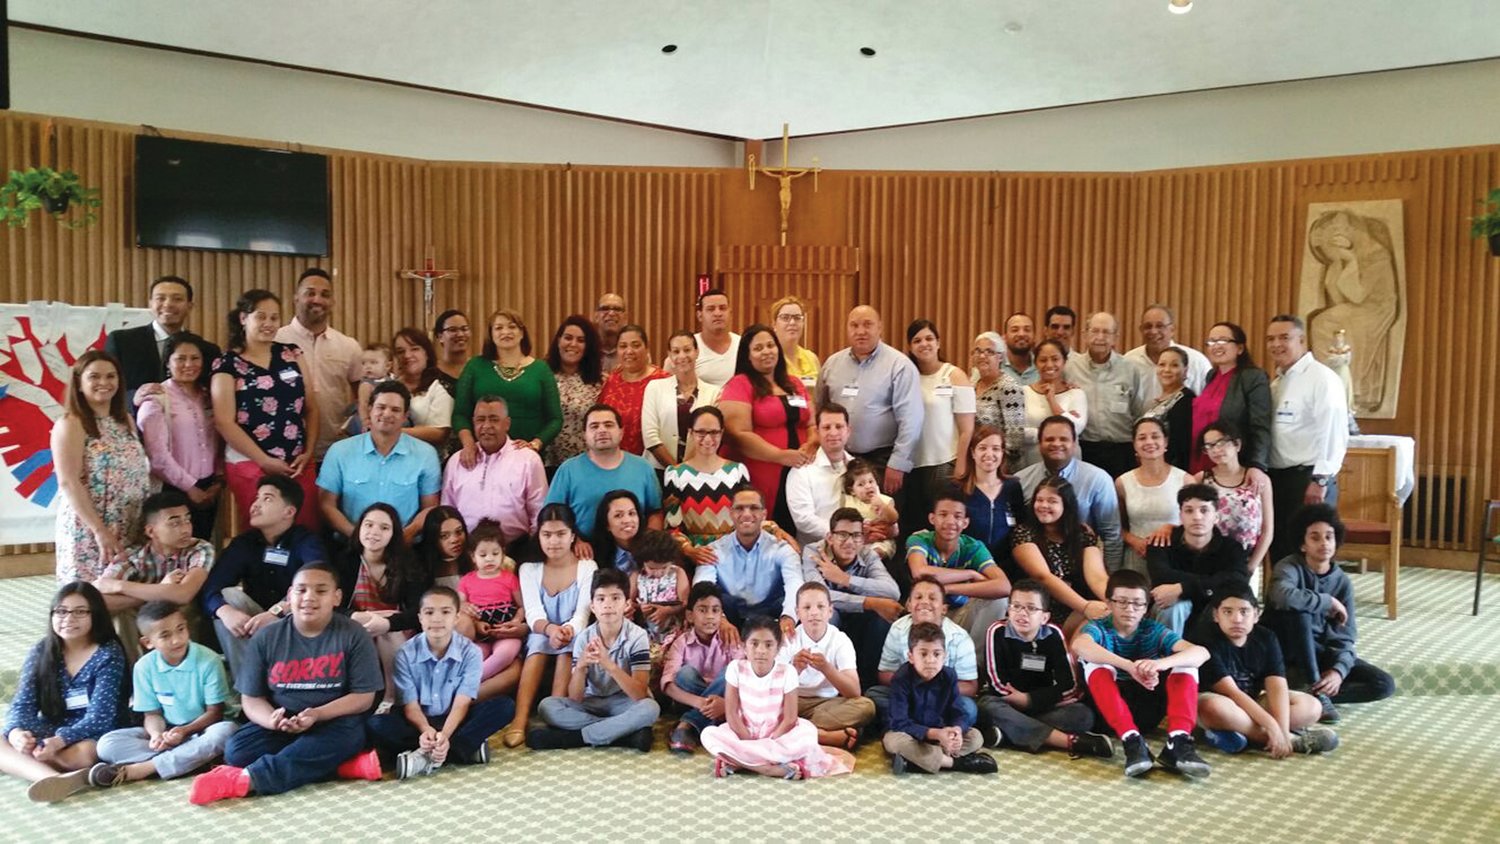 Retiro de familias en la Salette: Mario y Yazmin Porcayo en el centro de la foto, Posan junto con los participantes del retiro de familias en el santuario de La Salette Shrine en el año 2015.